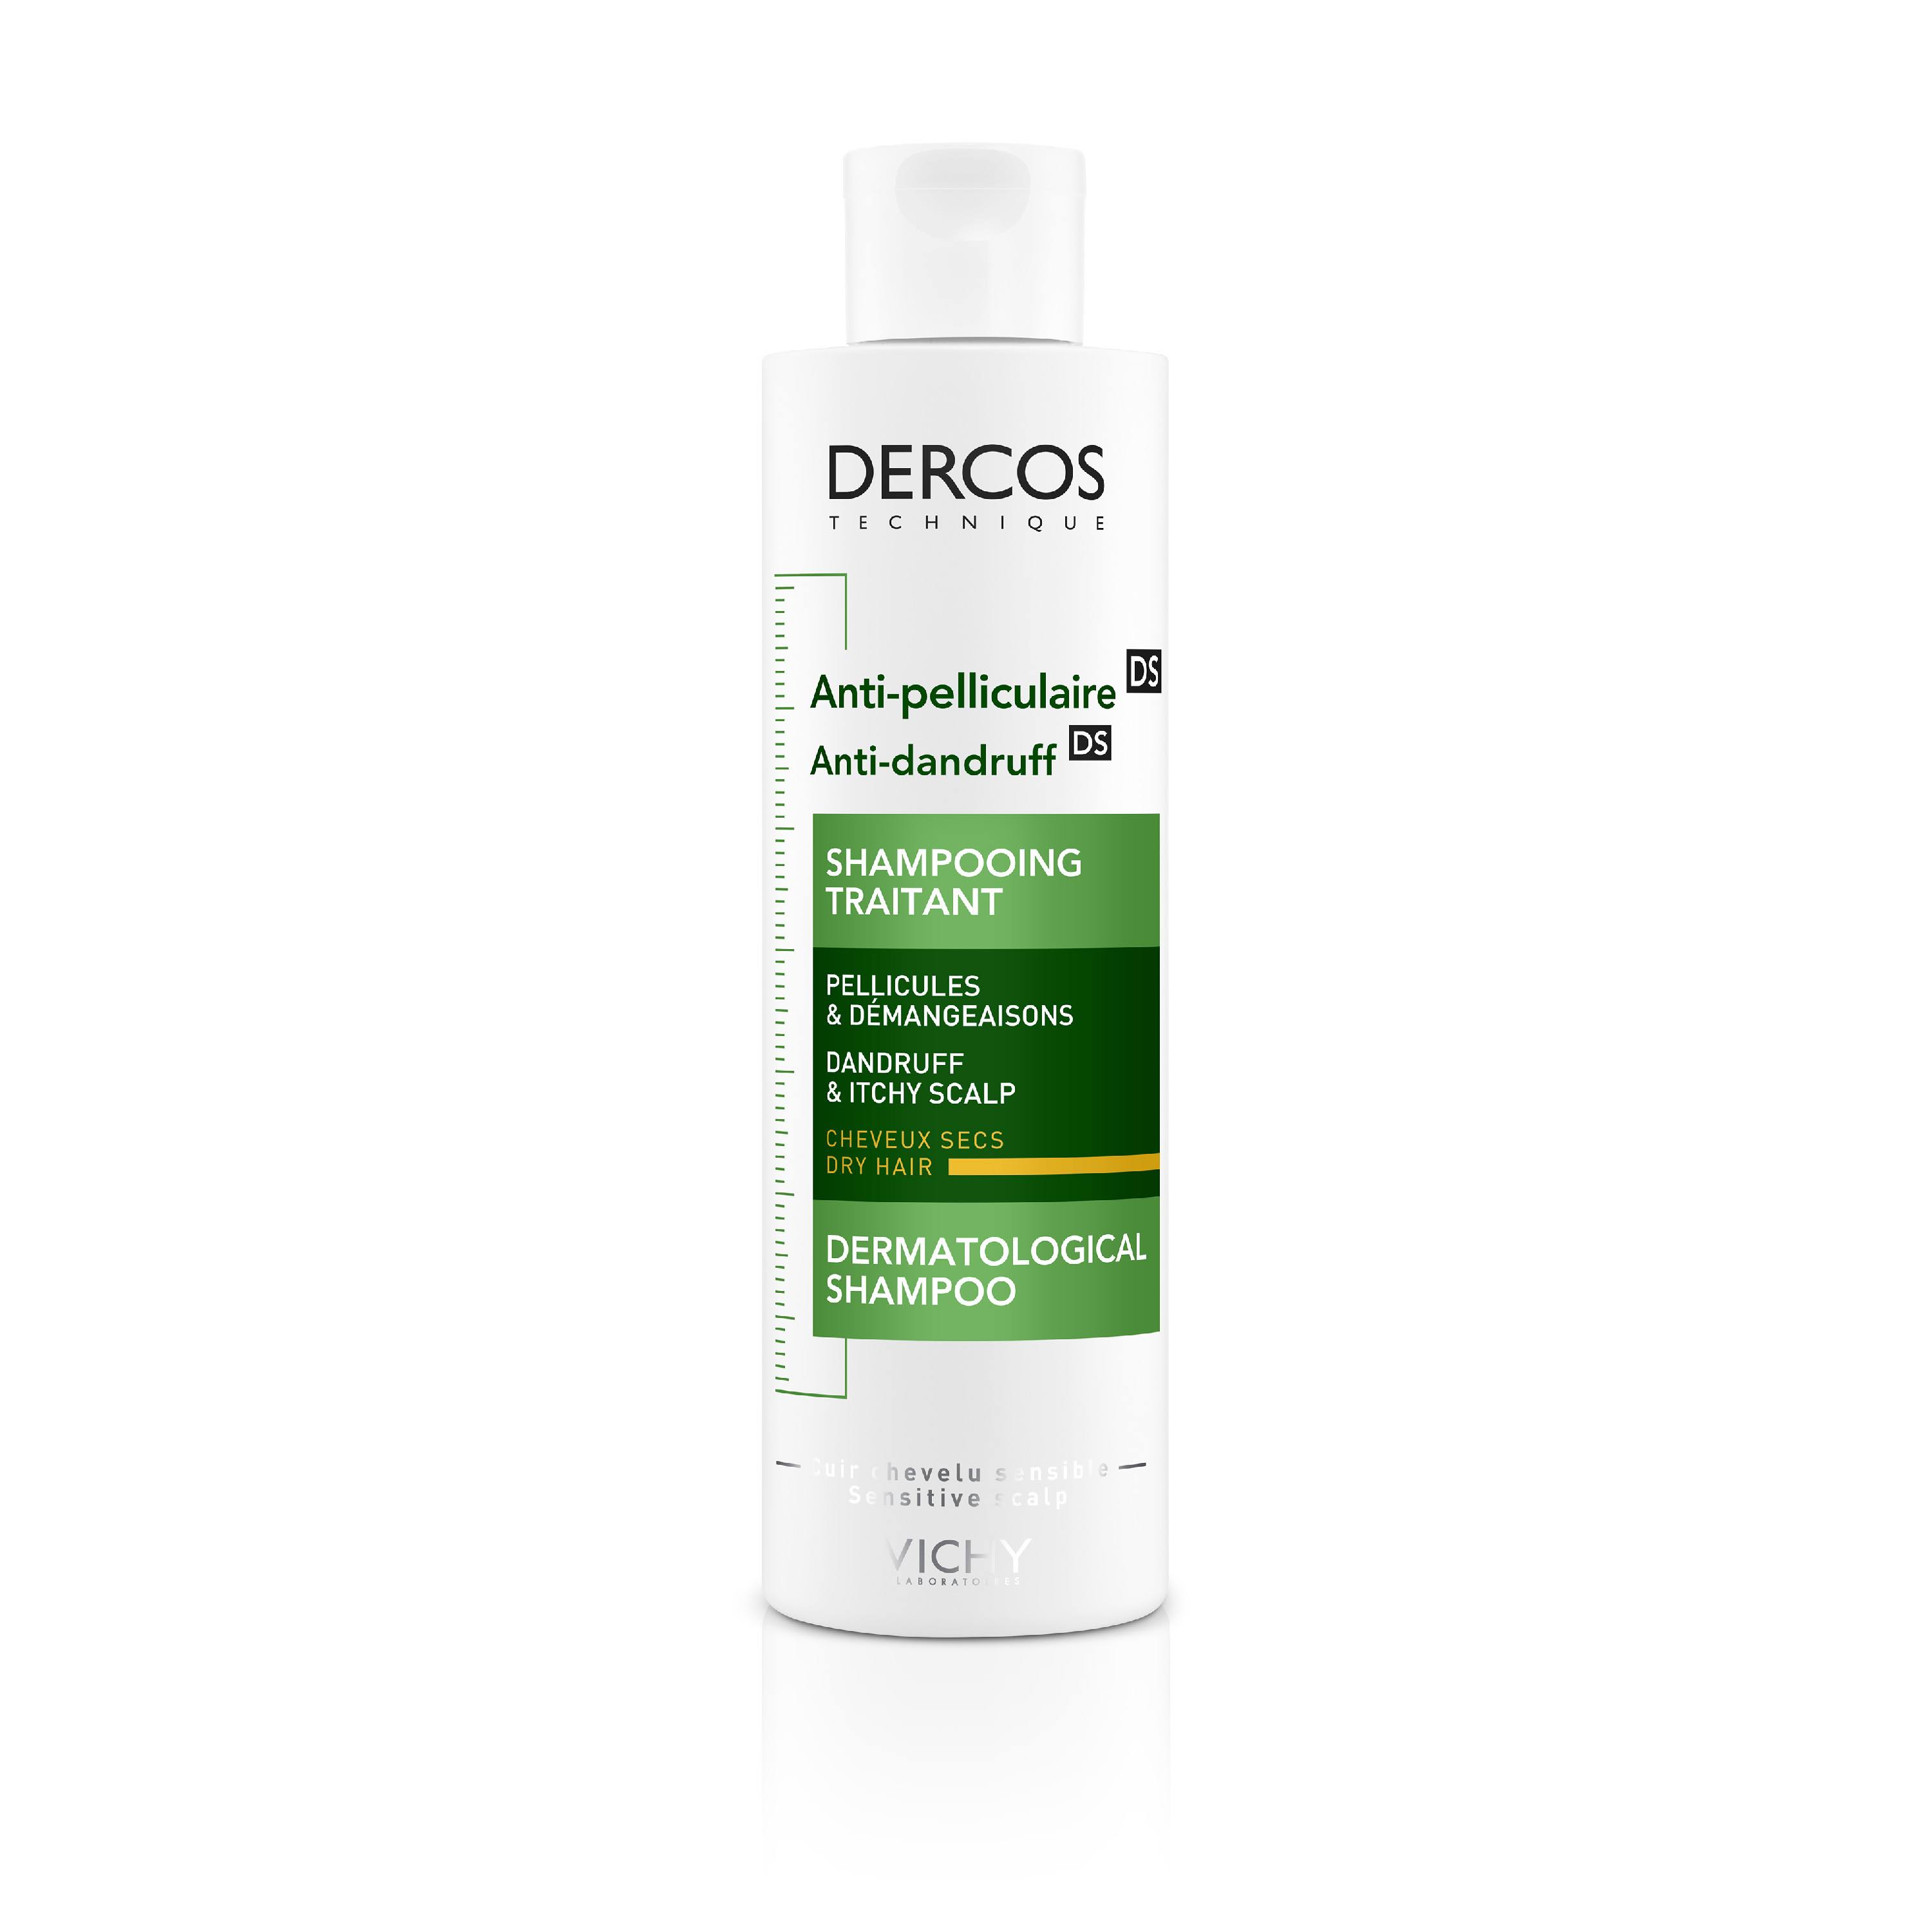 Vichy Dercos Anti-Dandruff Shampoo - 200ml